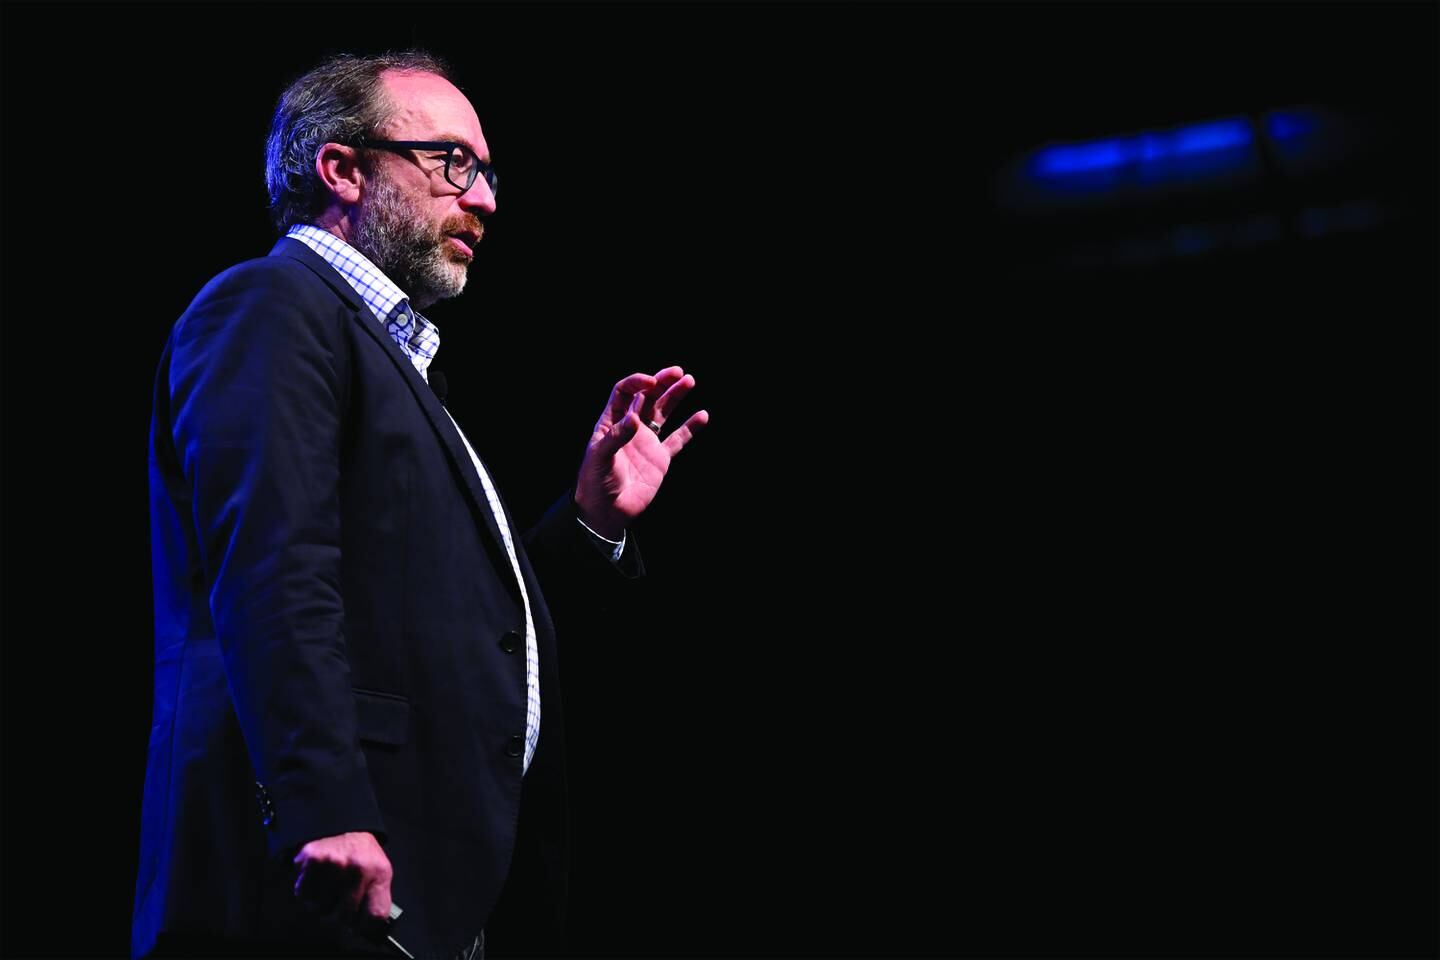 El orador principal Jimmy Wales pronuncia un discurso en el foro World of Business Ideas (WOBI) en Sydney, el jueves 1 de junio de 2017.dfd